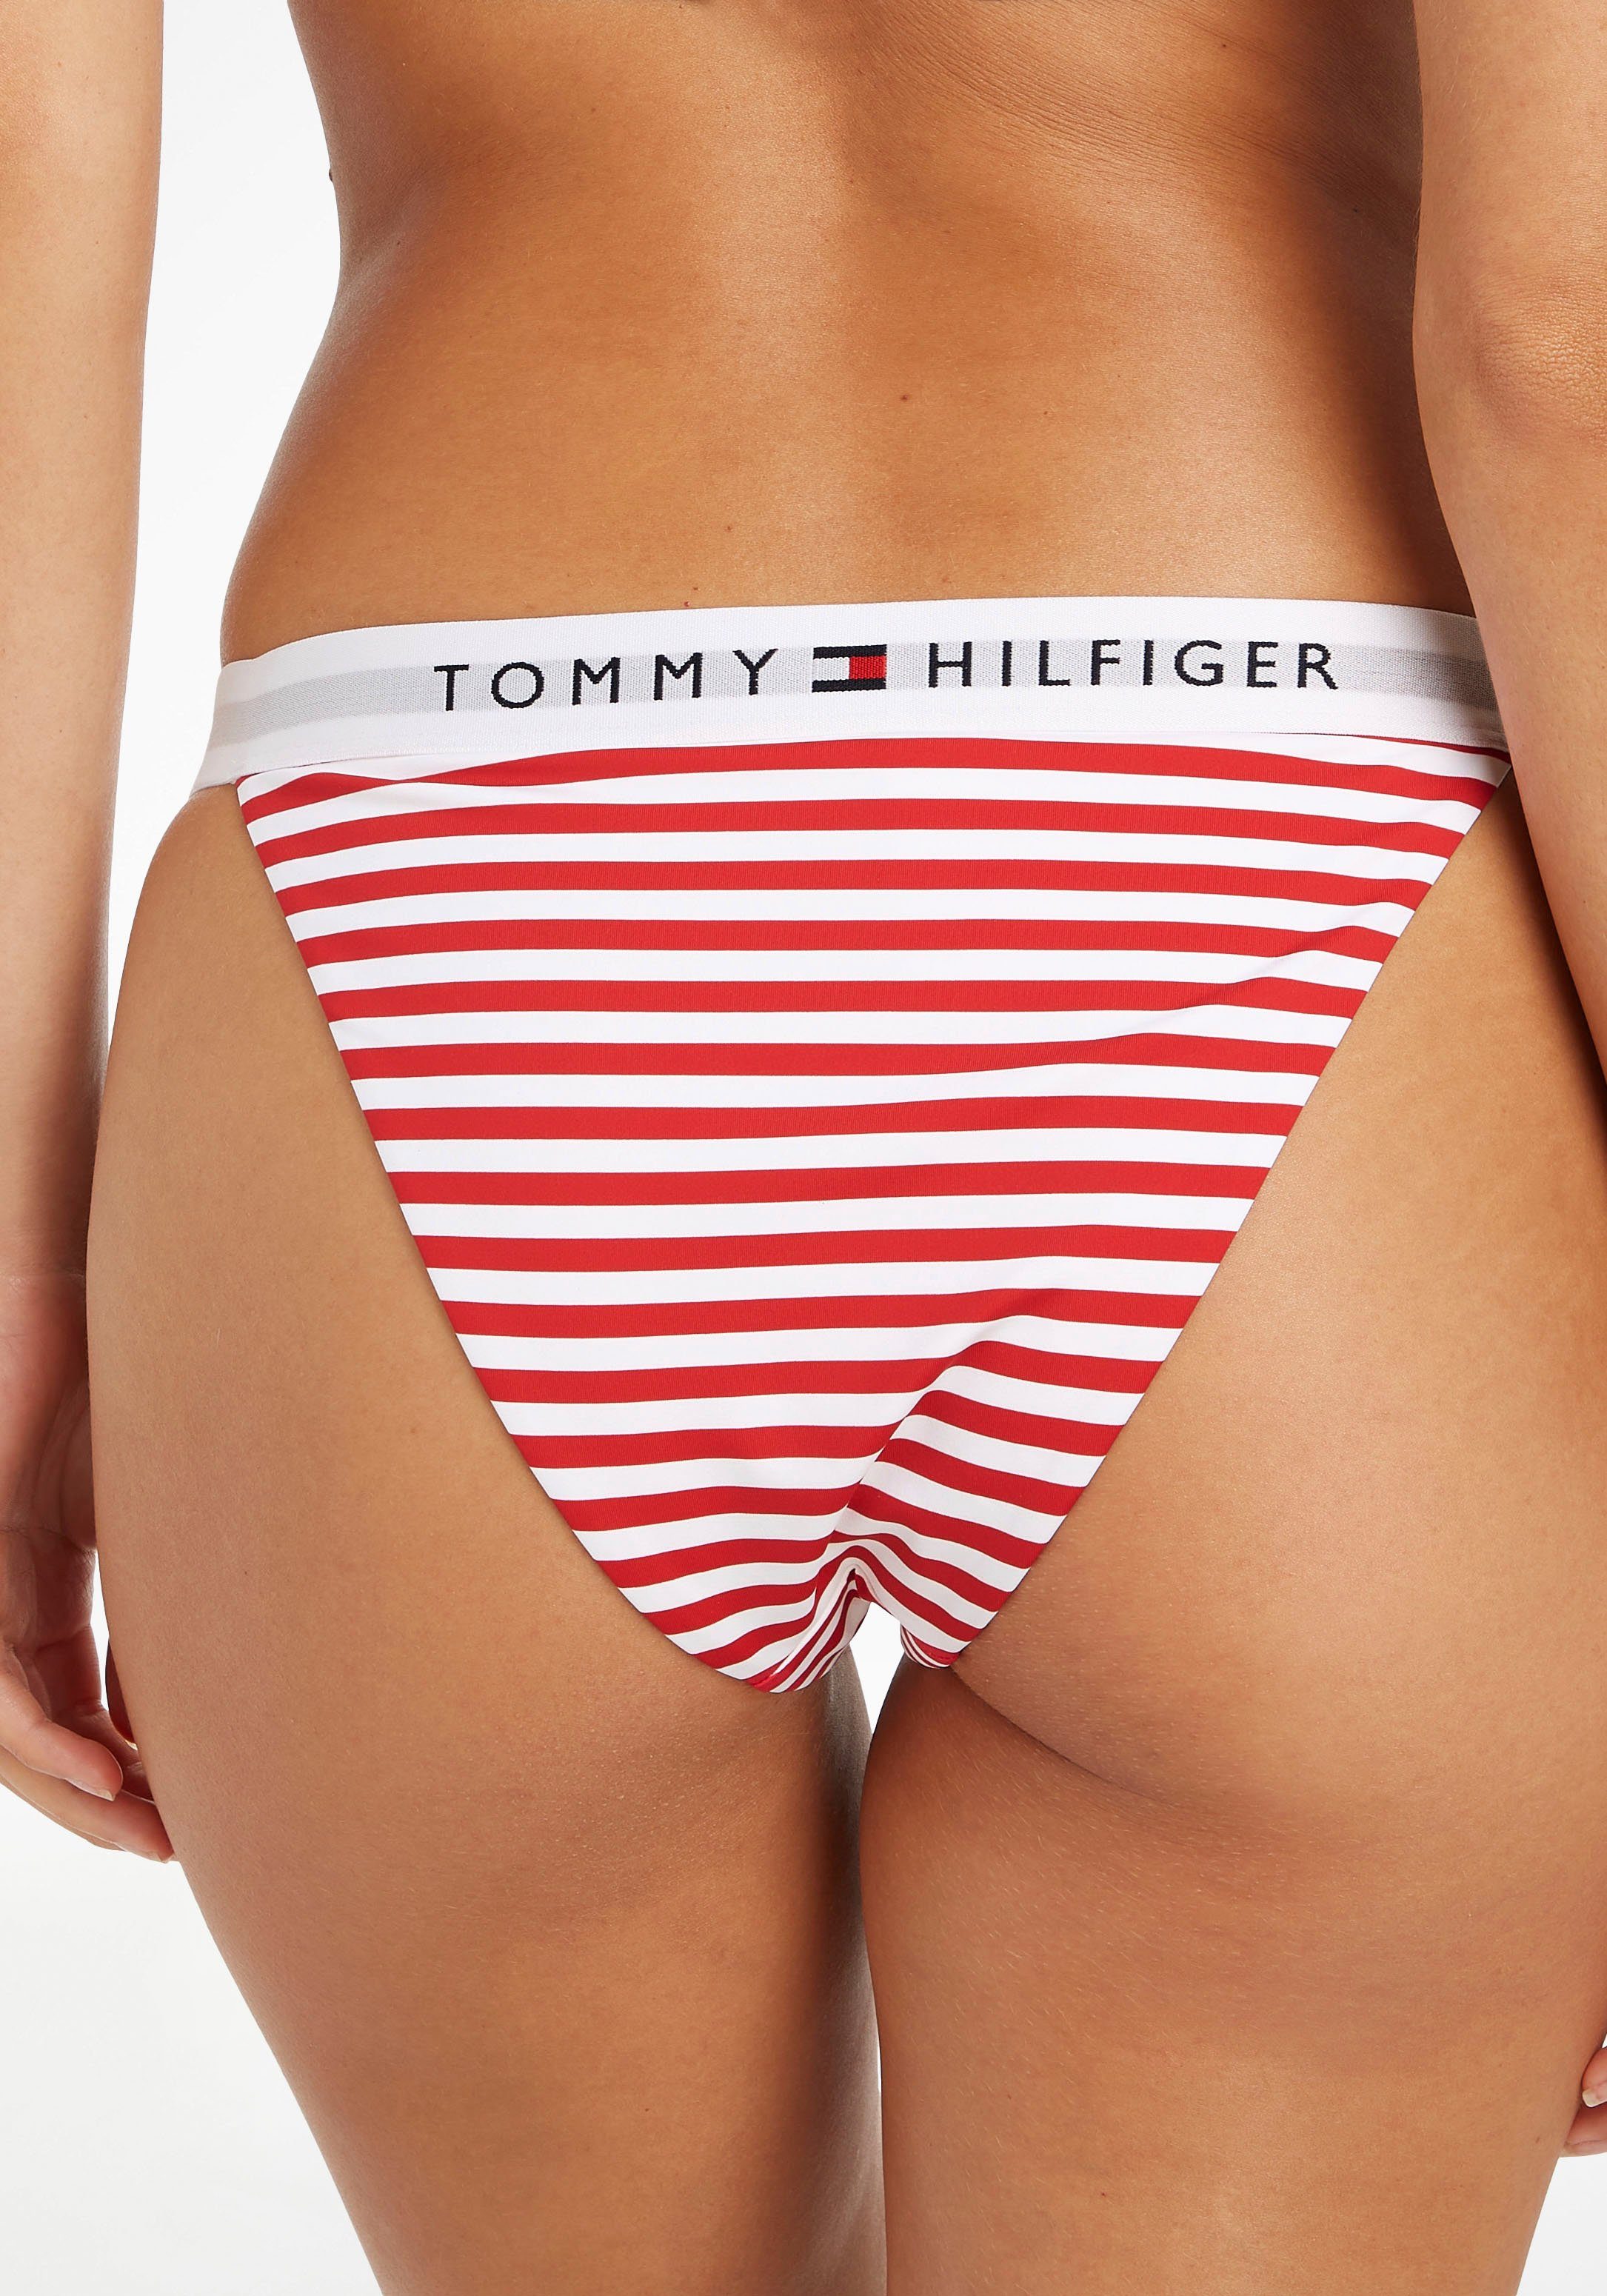 WB BIKINI PRINT Tommy Hilfiger-Branding Swimwear Tommy mit Hilfiger CHEEKY Bikini-Hose TH